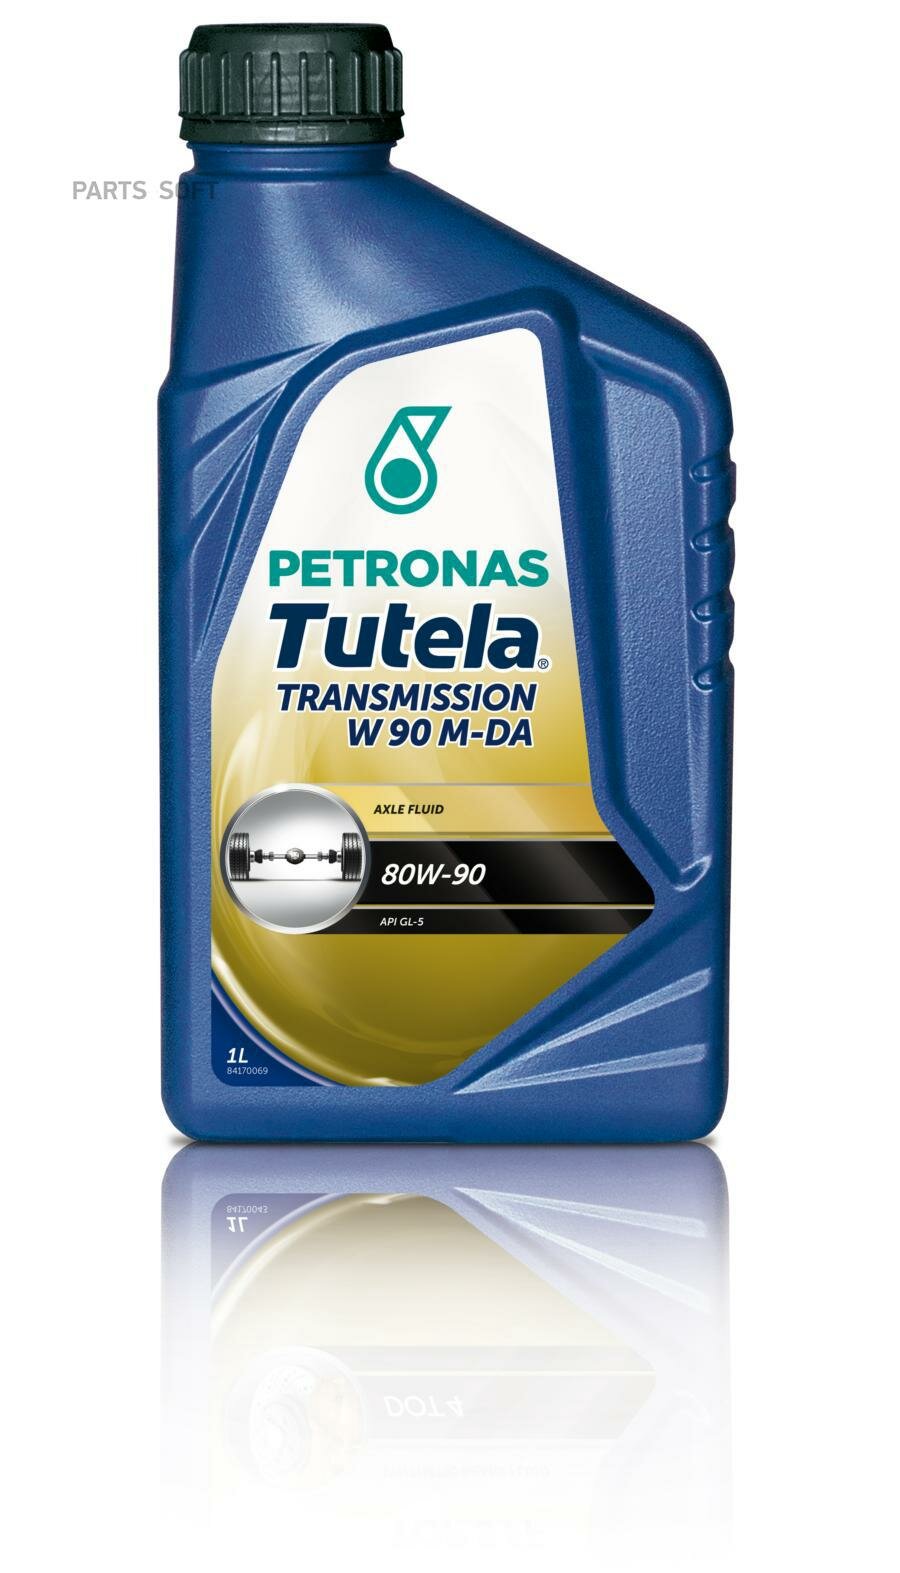 Масло трансмиссионное Petronas Tutela T W90/M -DA 80W-90